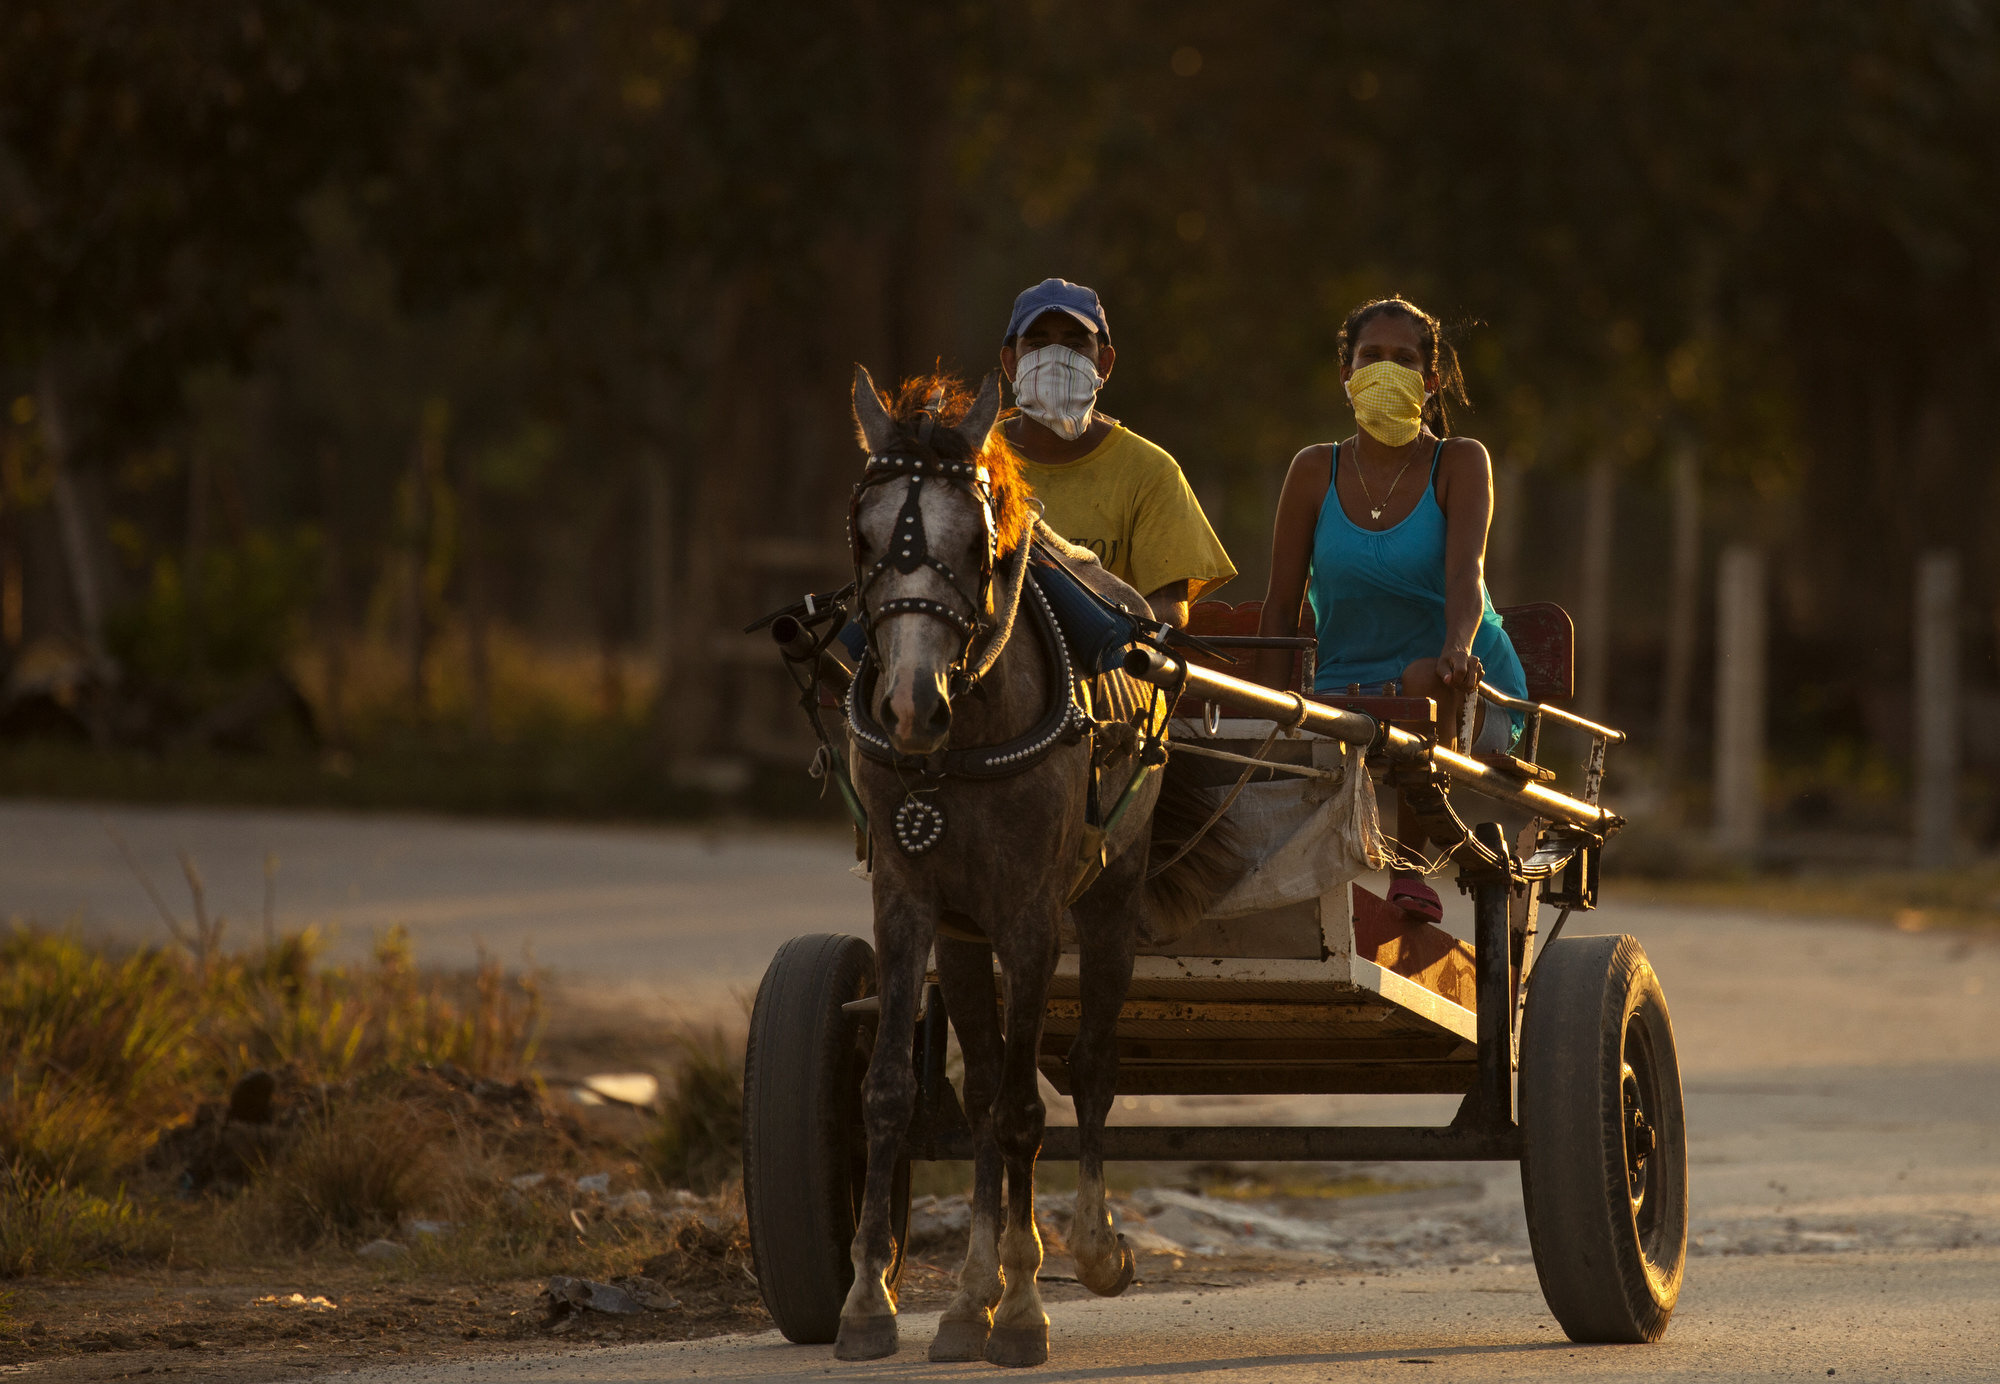  Campesinos cubanos en el poblado de Wajay usan tapabocas para protegerse del Coronavirus mientras viajan en su carro de caballo al finalizar su da de trabajo.  